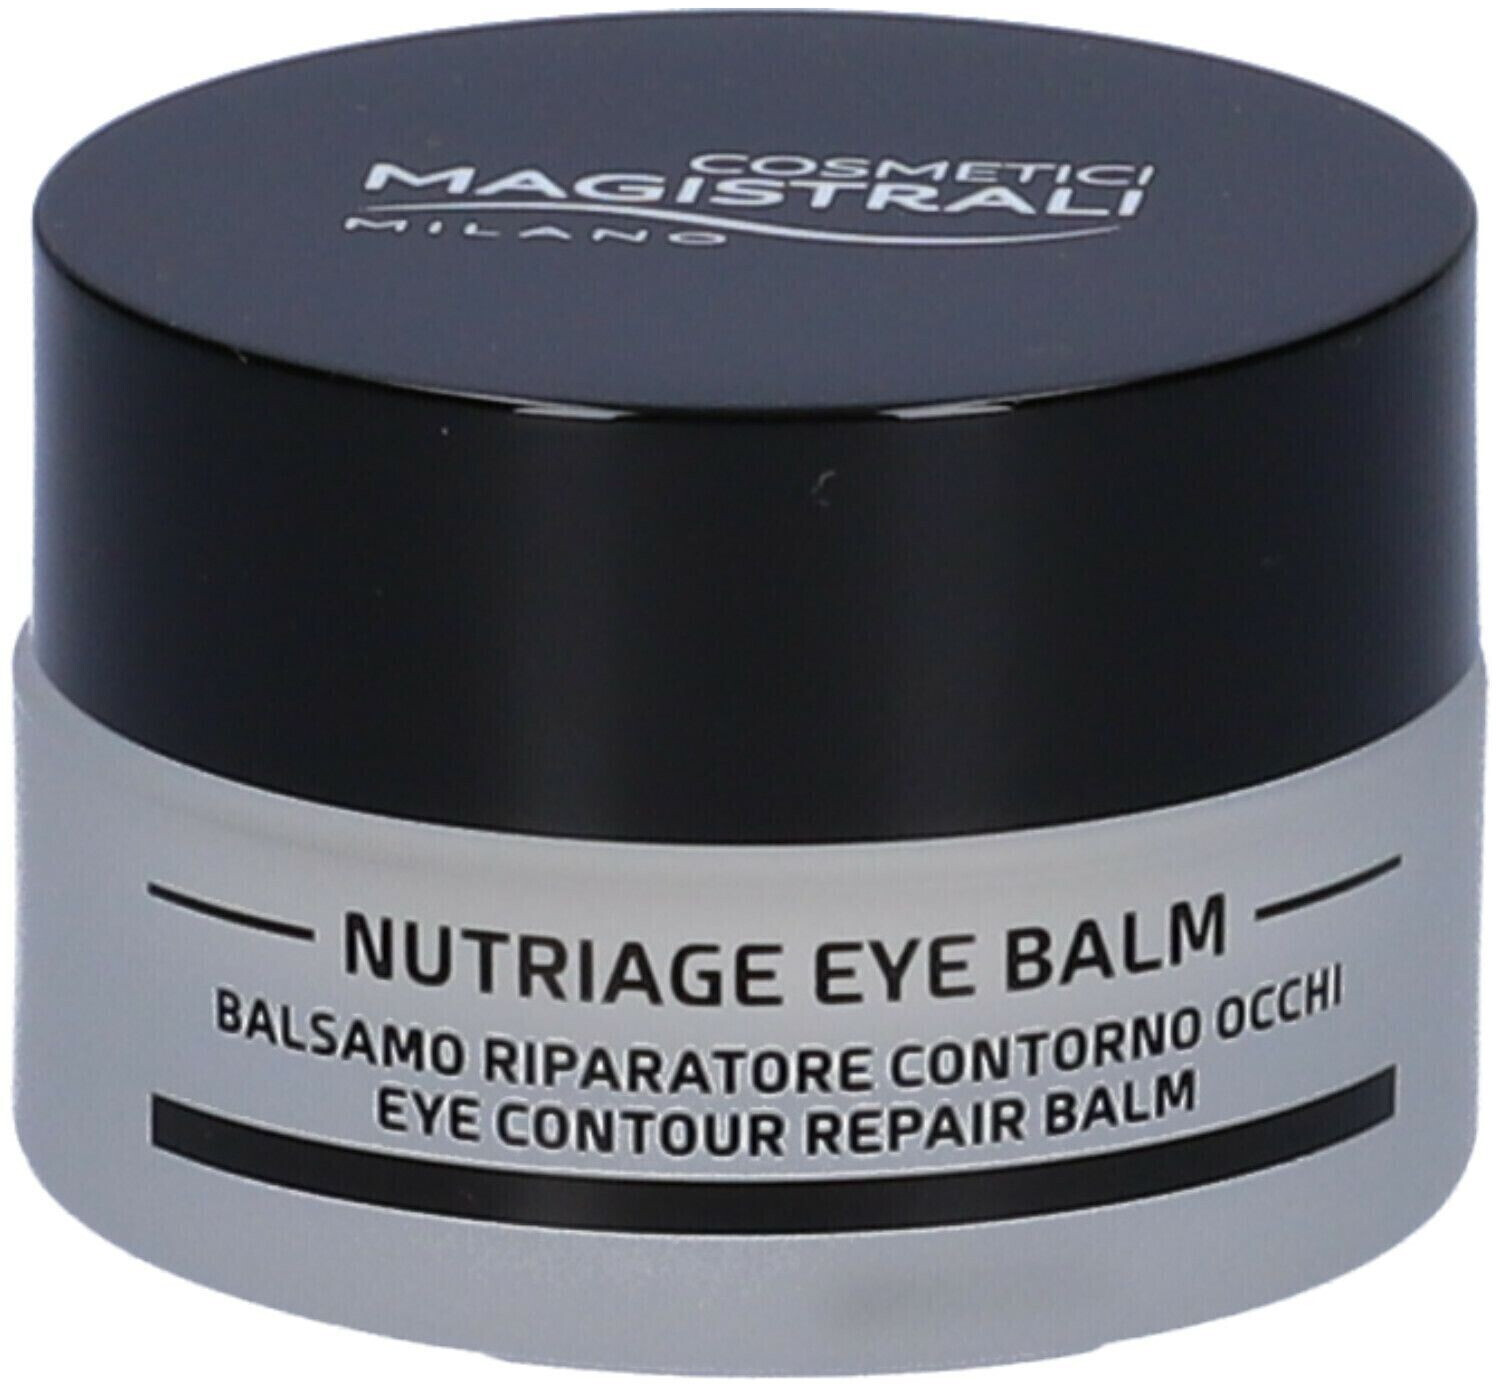 Cosmetici Magistrali Nutriage Eye Balm (15ml) a € 26,57 (oggi)